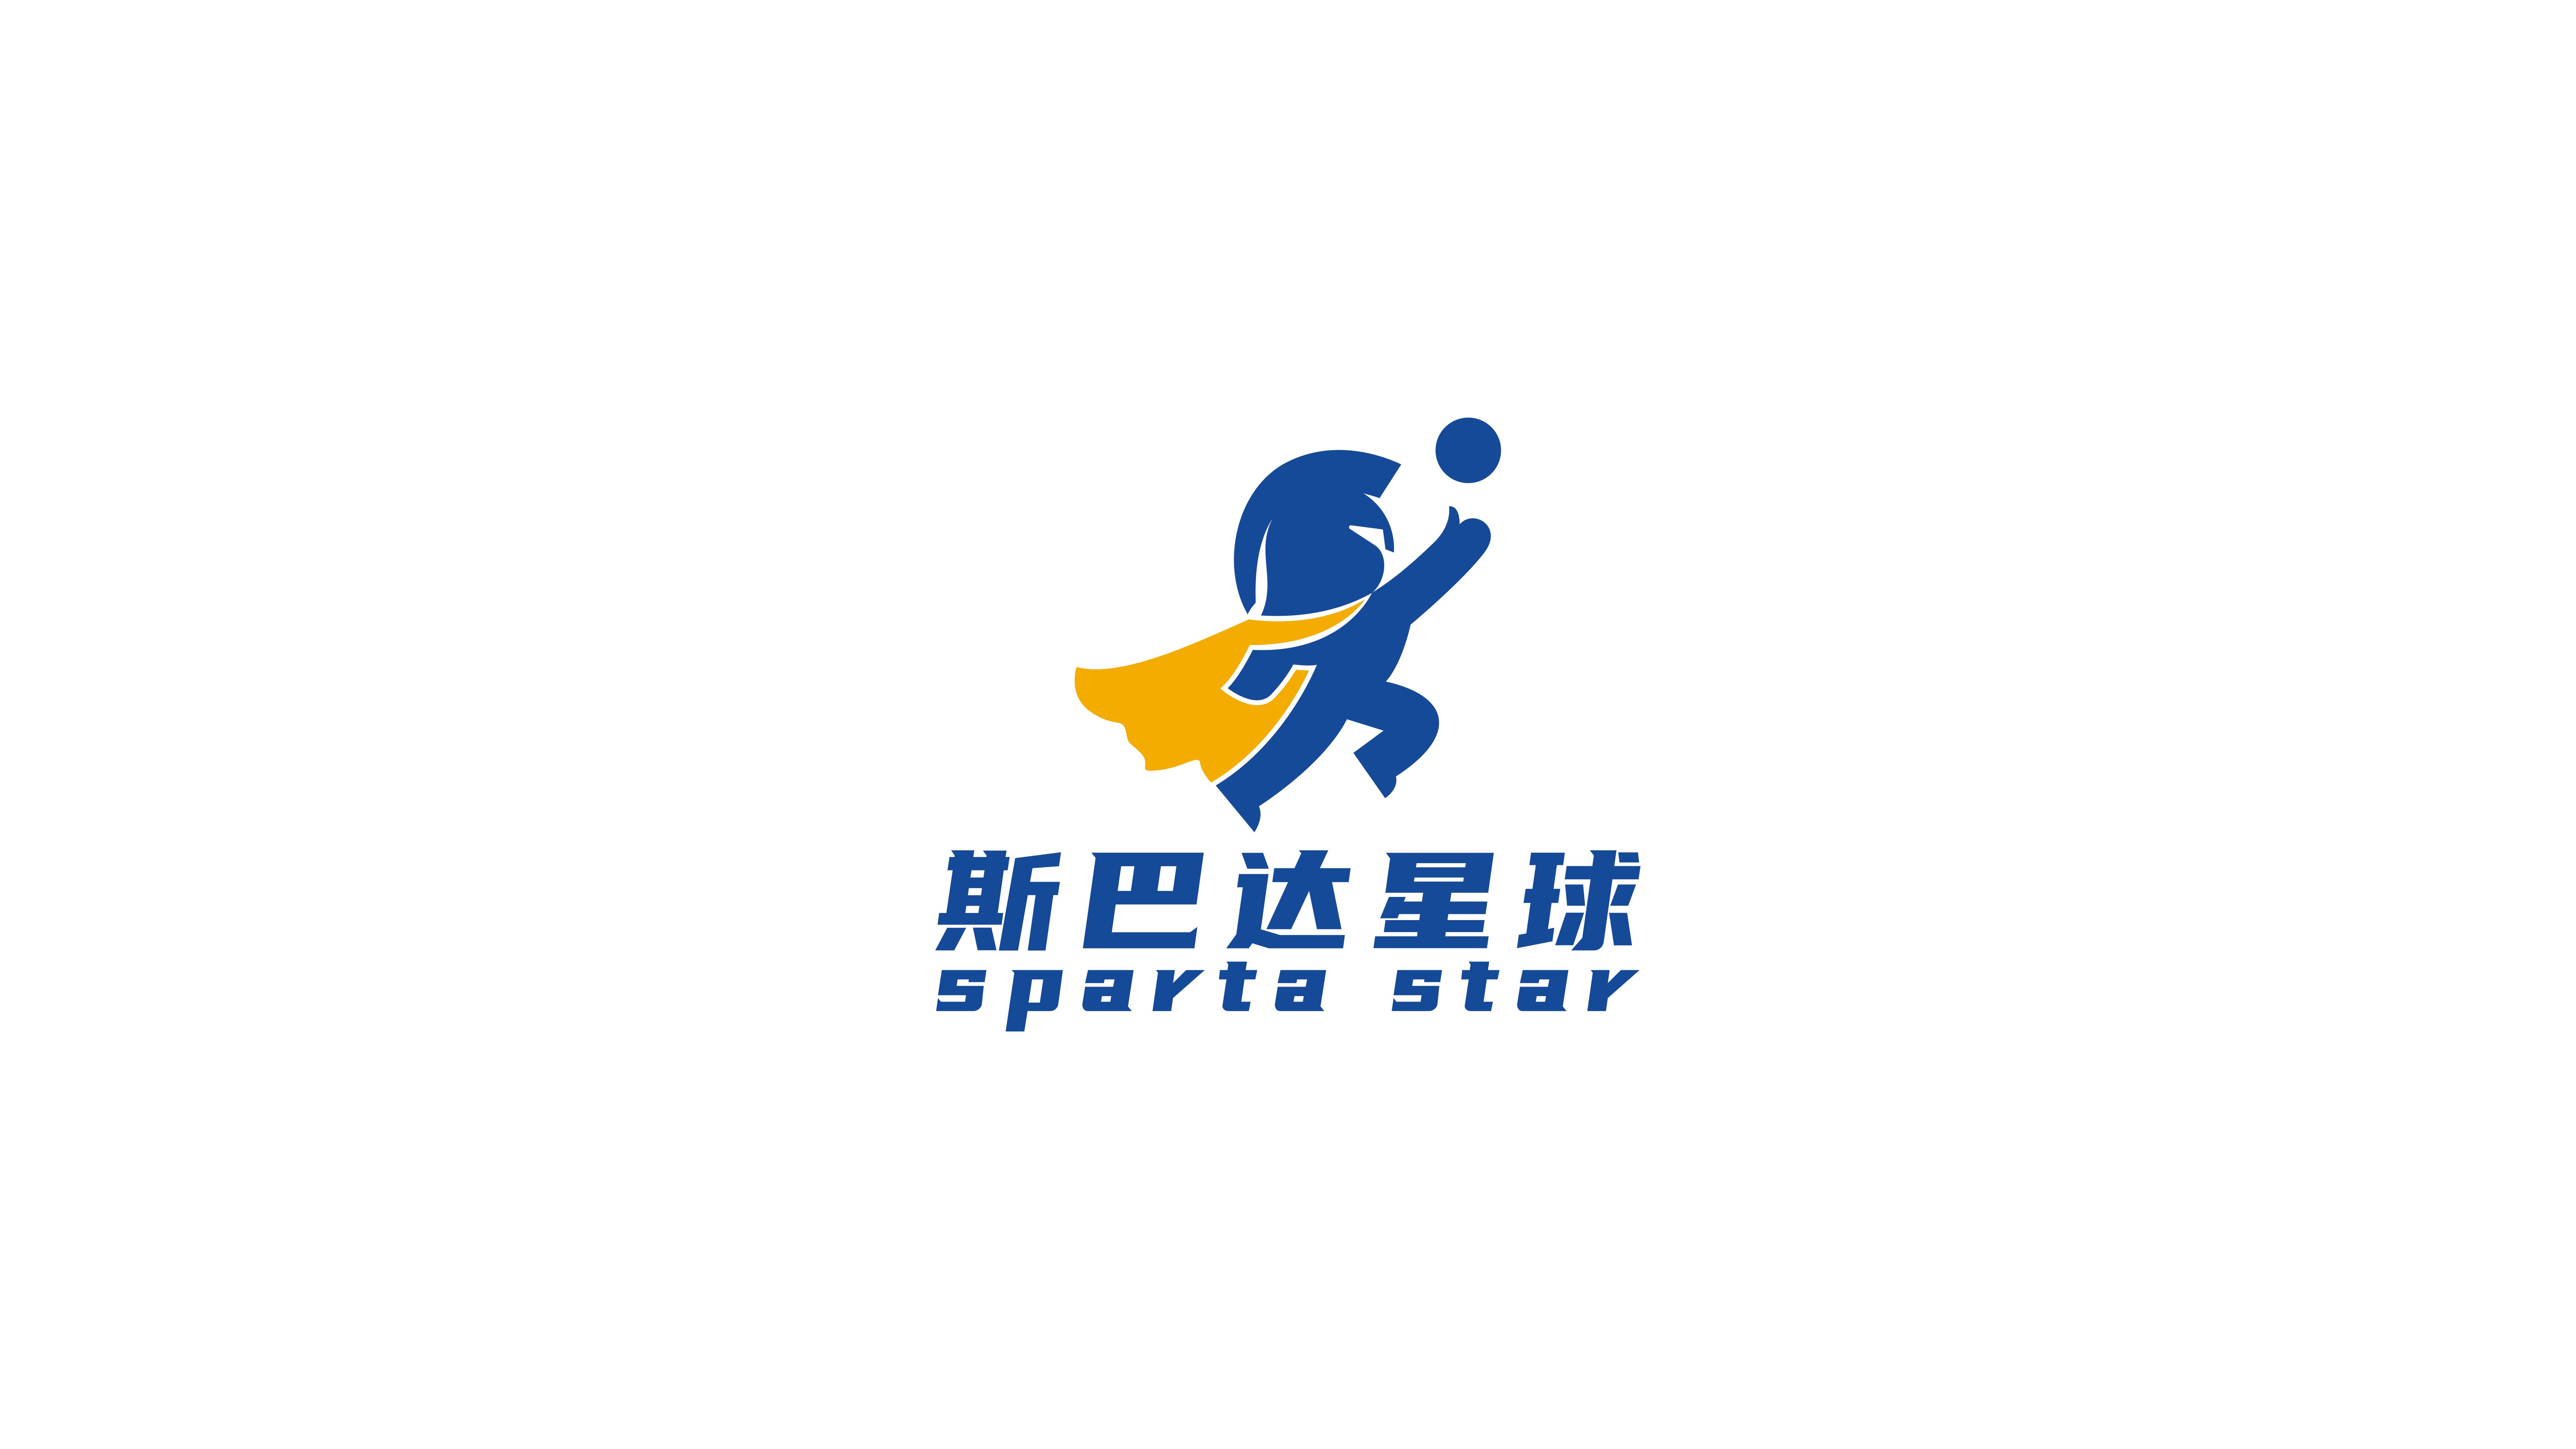 一款體育教育類logo設計